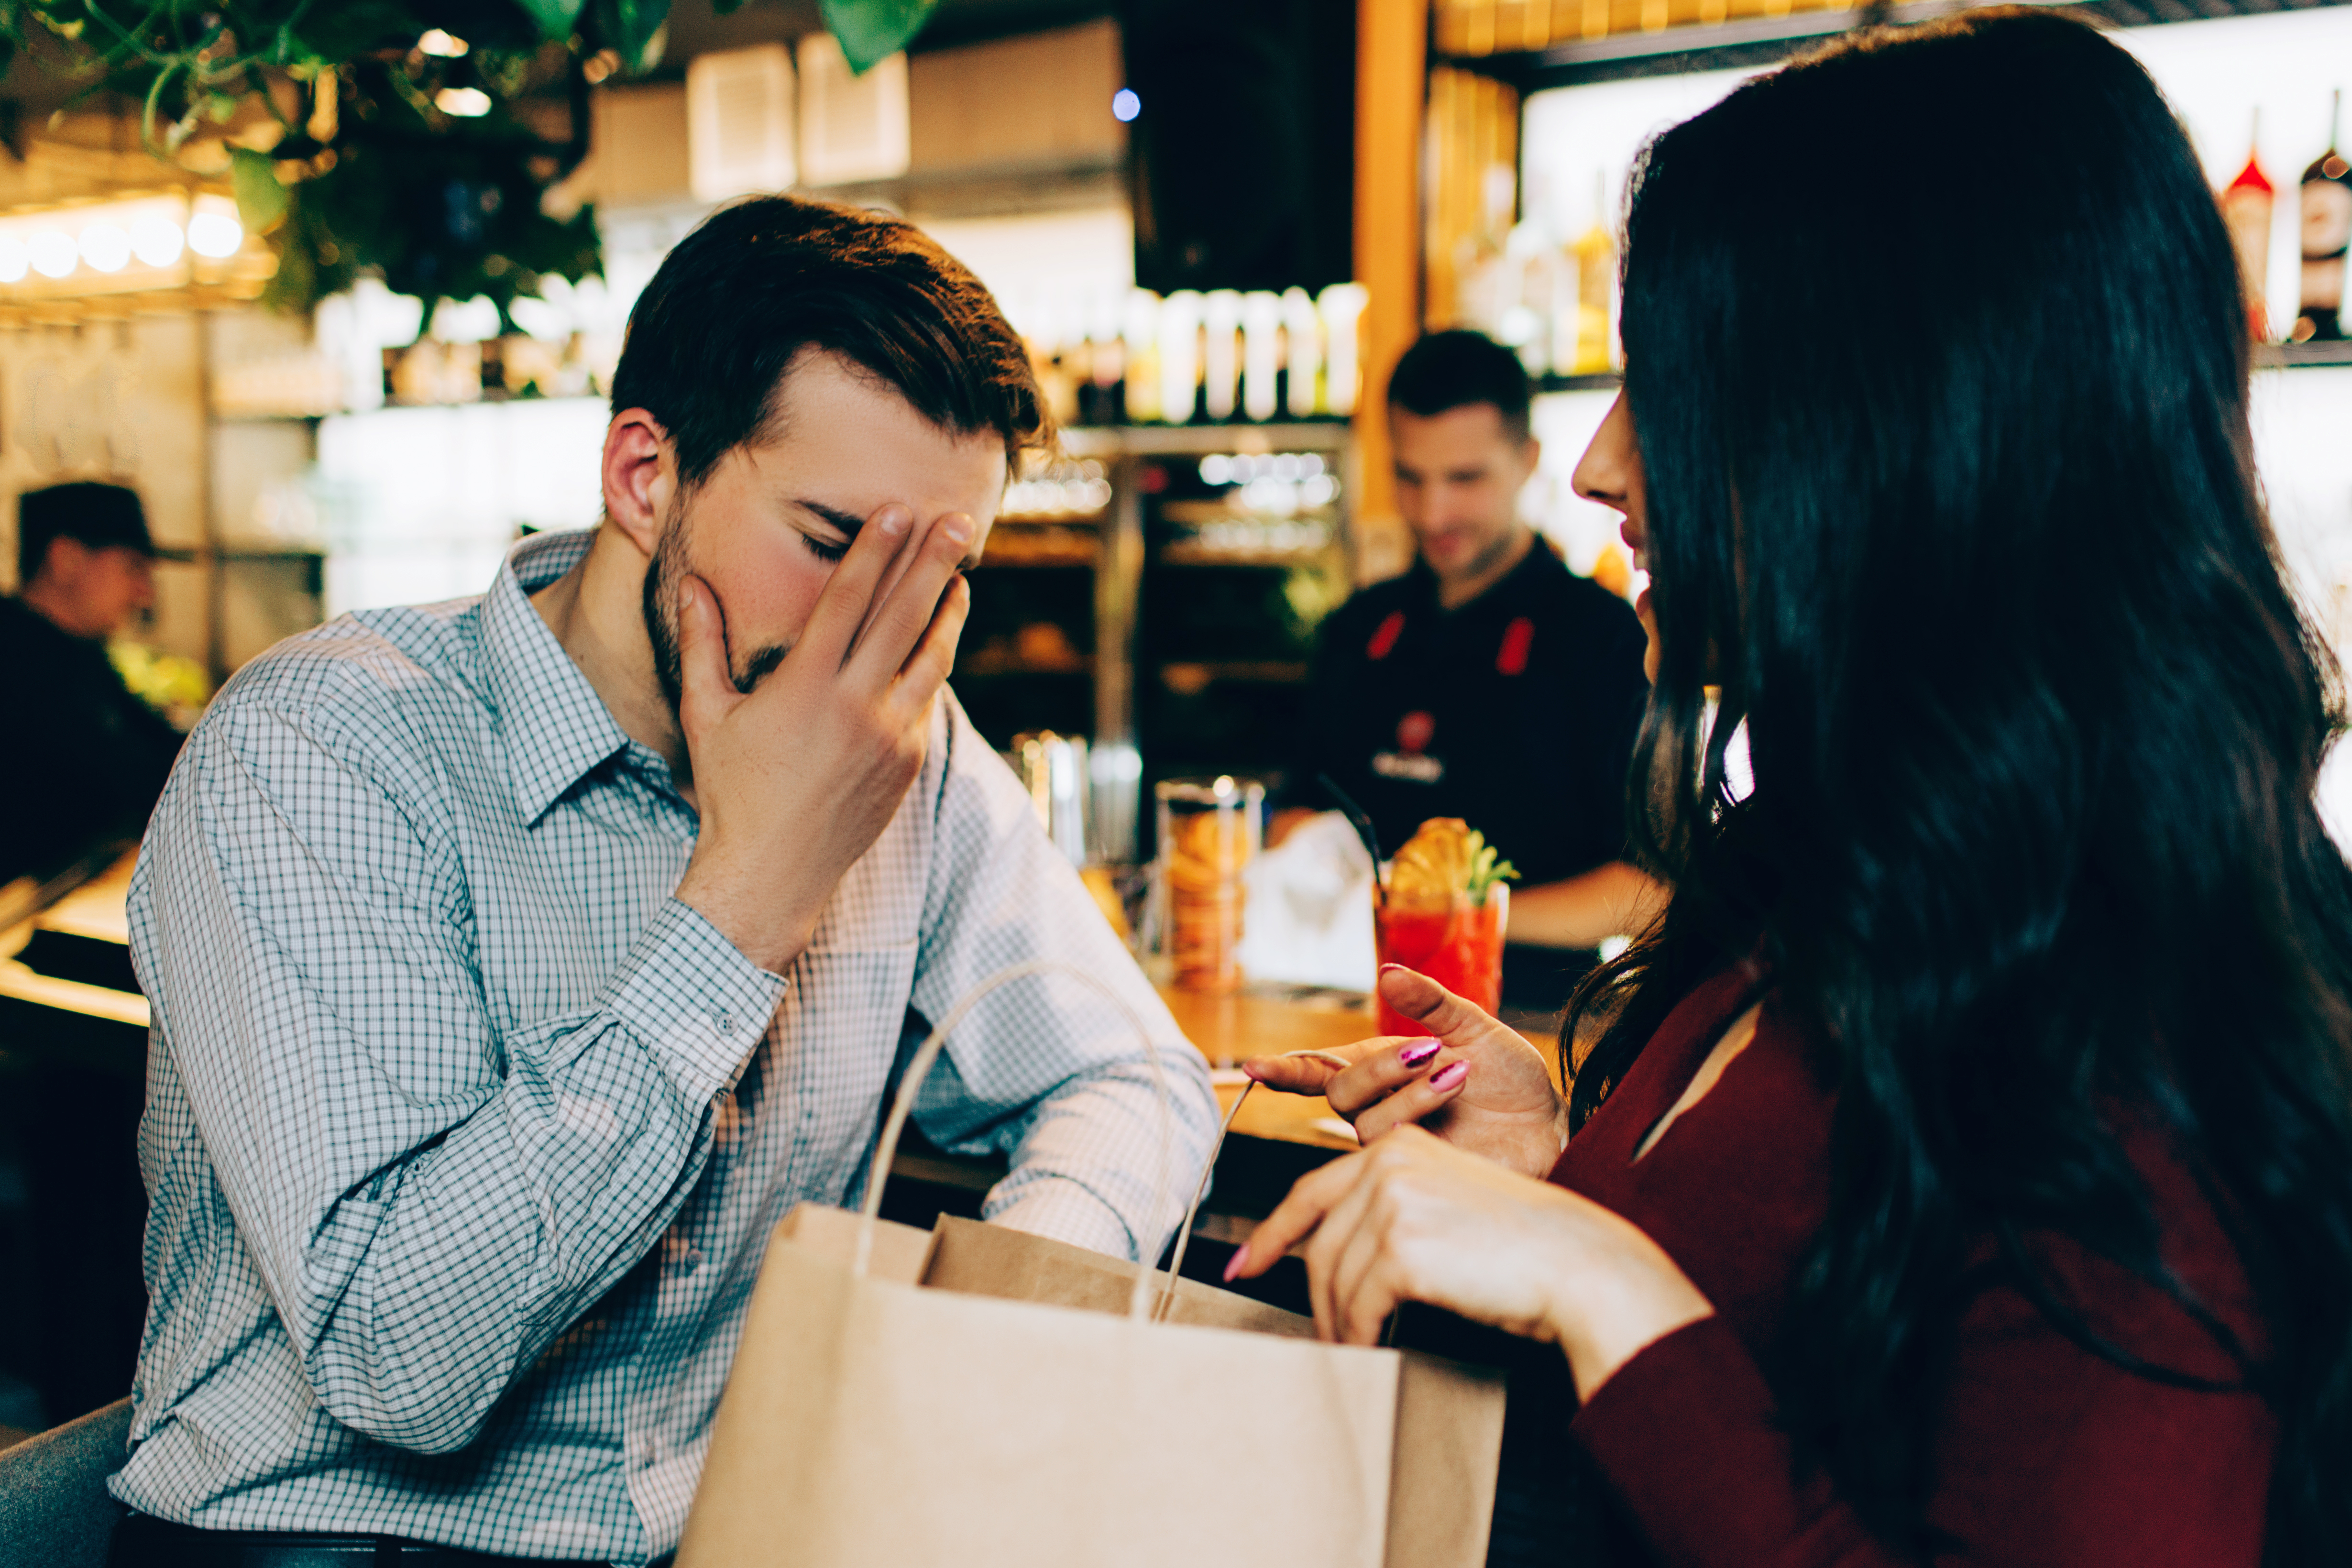 Un homme a l'air mécontent avec sa main sur le visage alors qu'il parle à une femme dans un restaurant | Source : Shutterstock